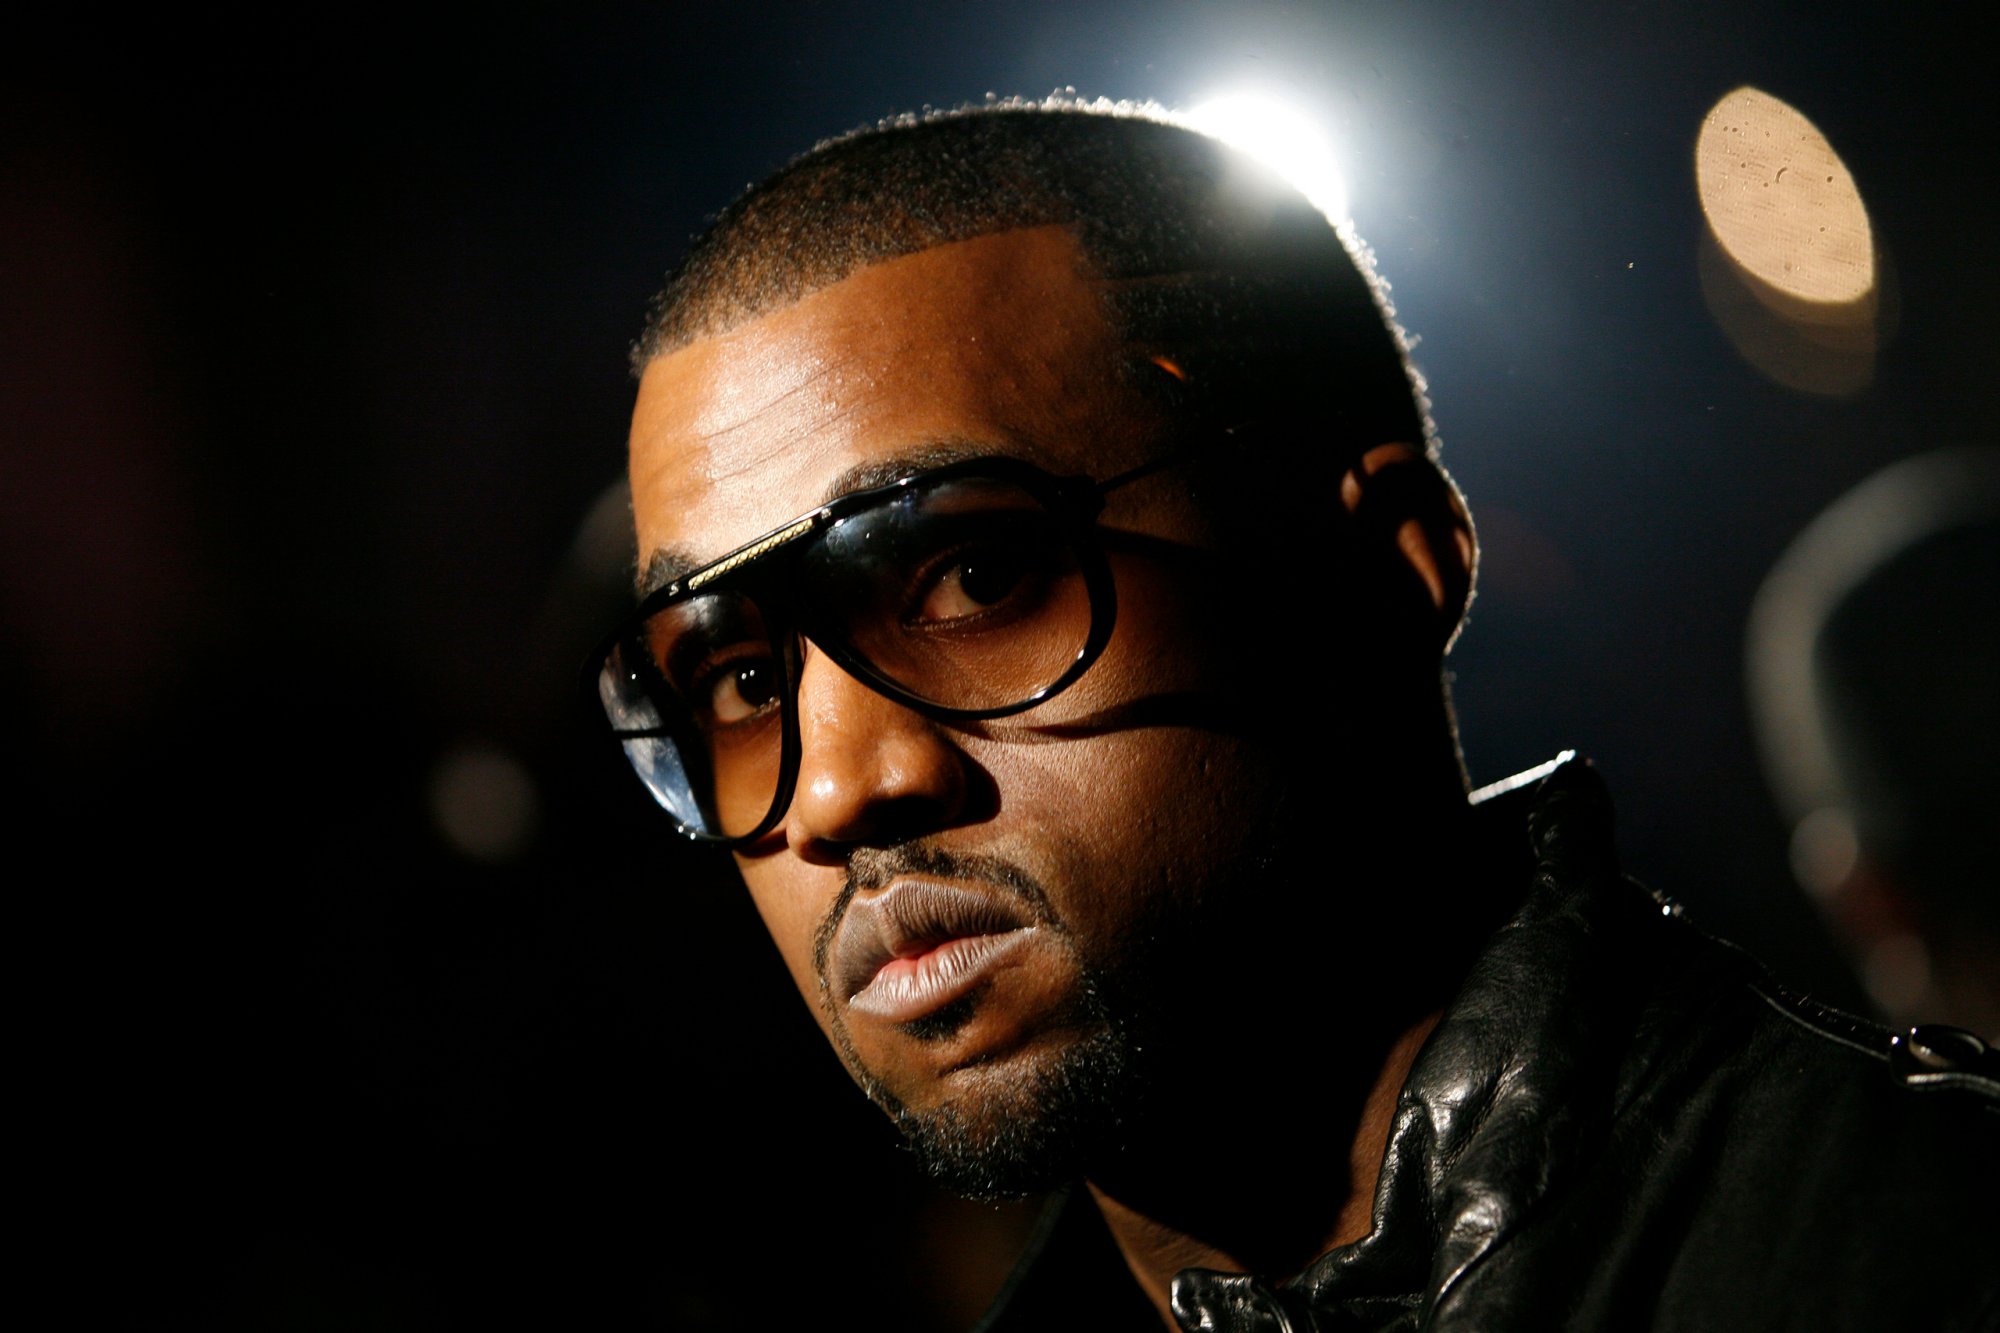 (Re)découvrez ces demos de Kanye West enregistrées pendant les sessions Yeezus